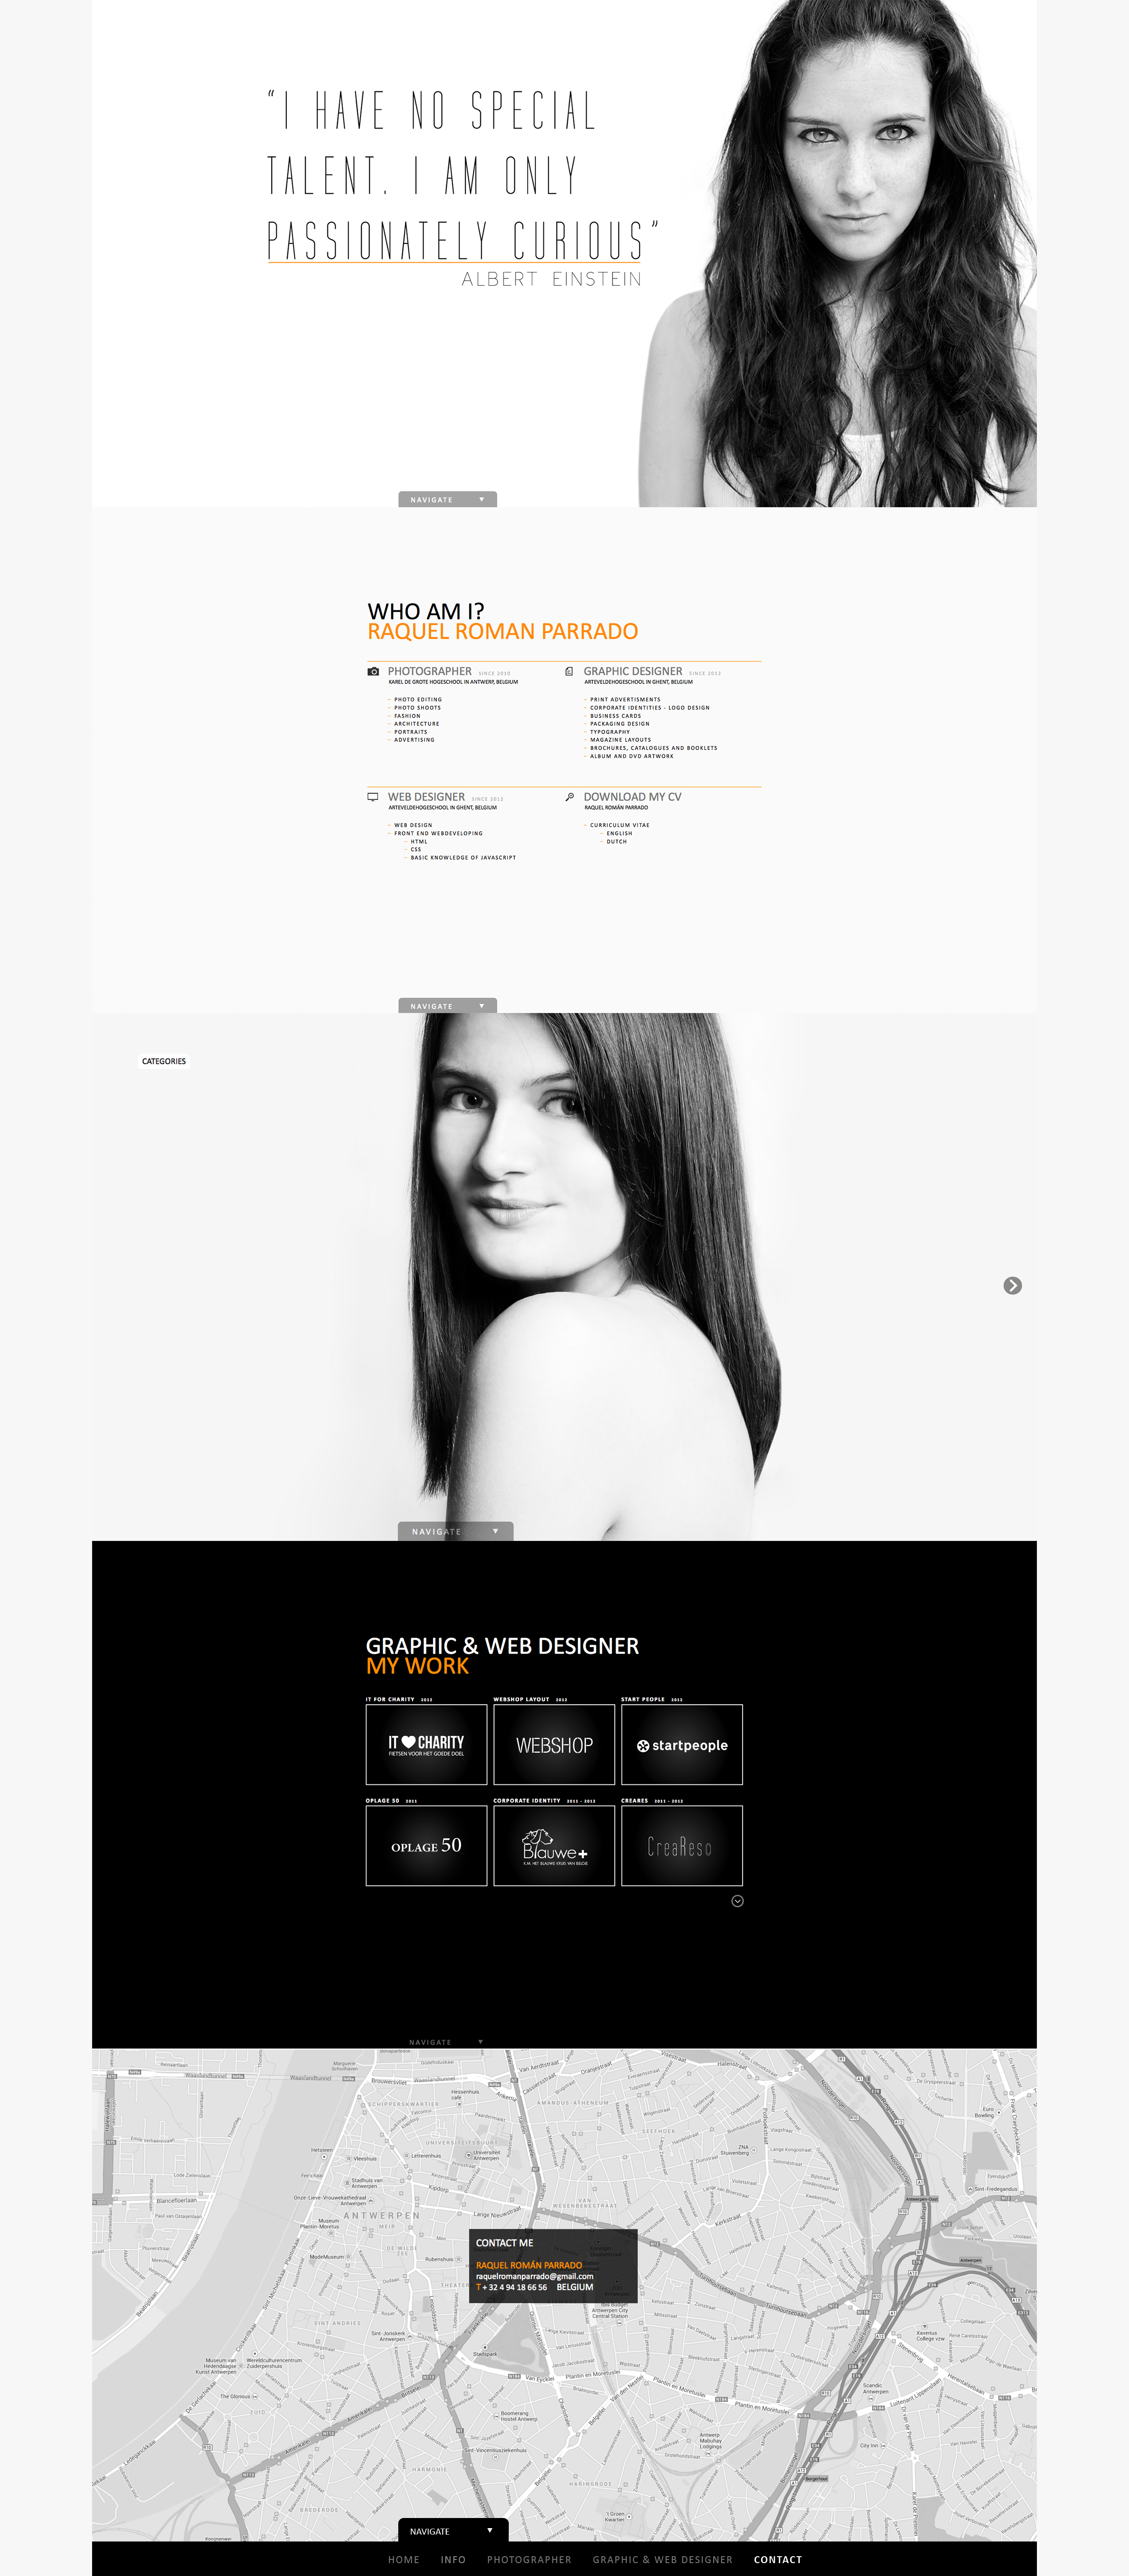 Prevous website portfolio Raquel Roman Parrado - portfolio - website